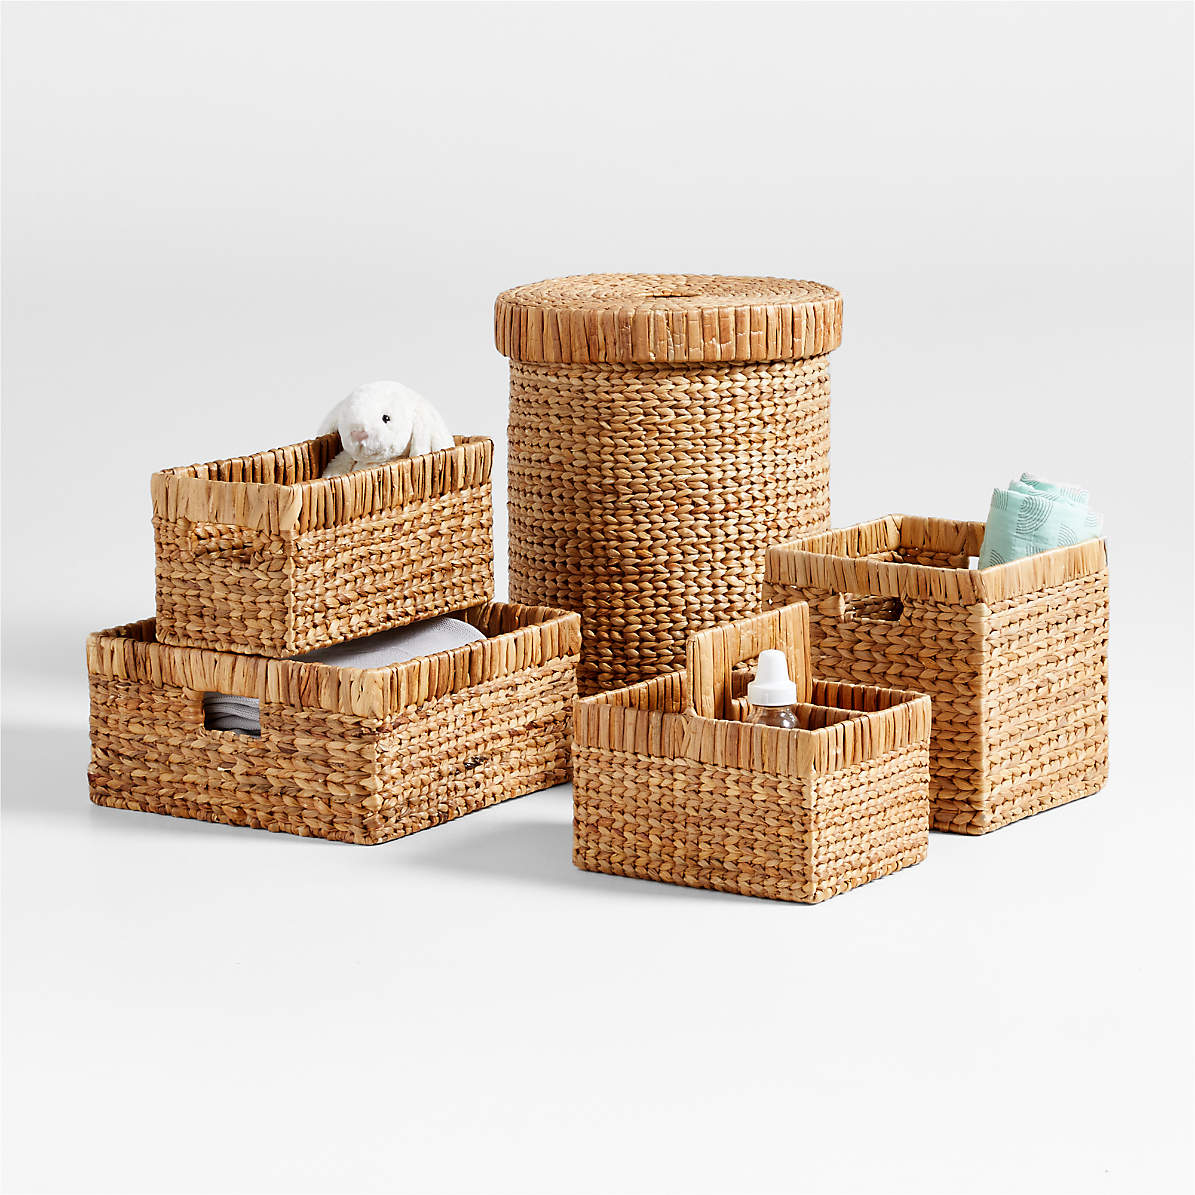 4X Small Wicker Baskets For Organizing Bathroom, Hyacinth Baskets